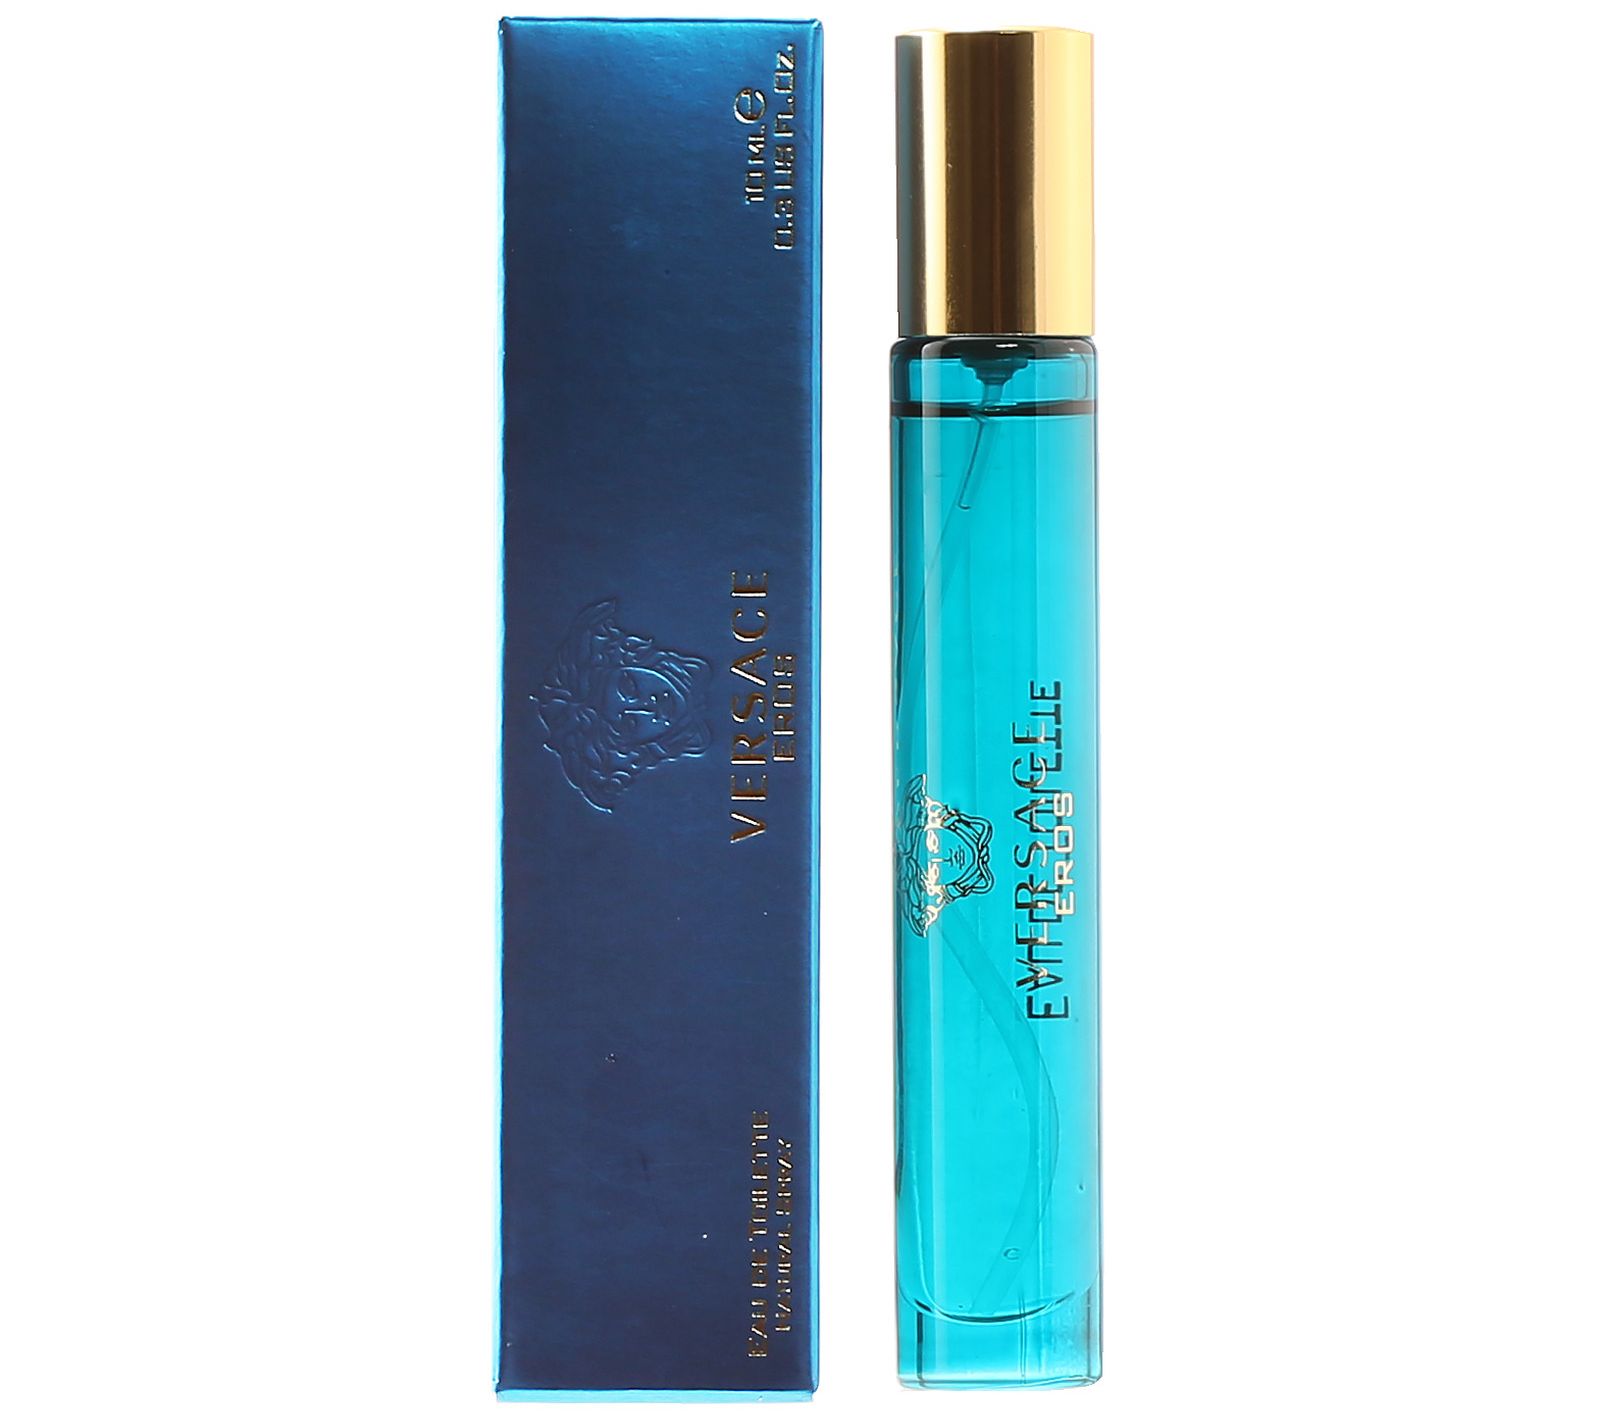 VERSACE DYLAN BLUE by VERSACE Men's Eau de Toilette Spray, EDT, 3.4  oz. (100 ml)